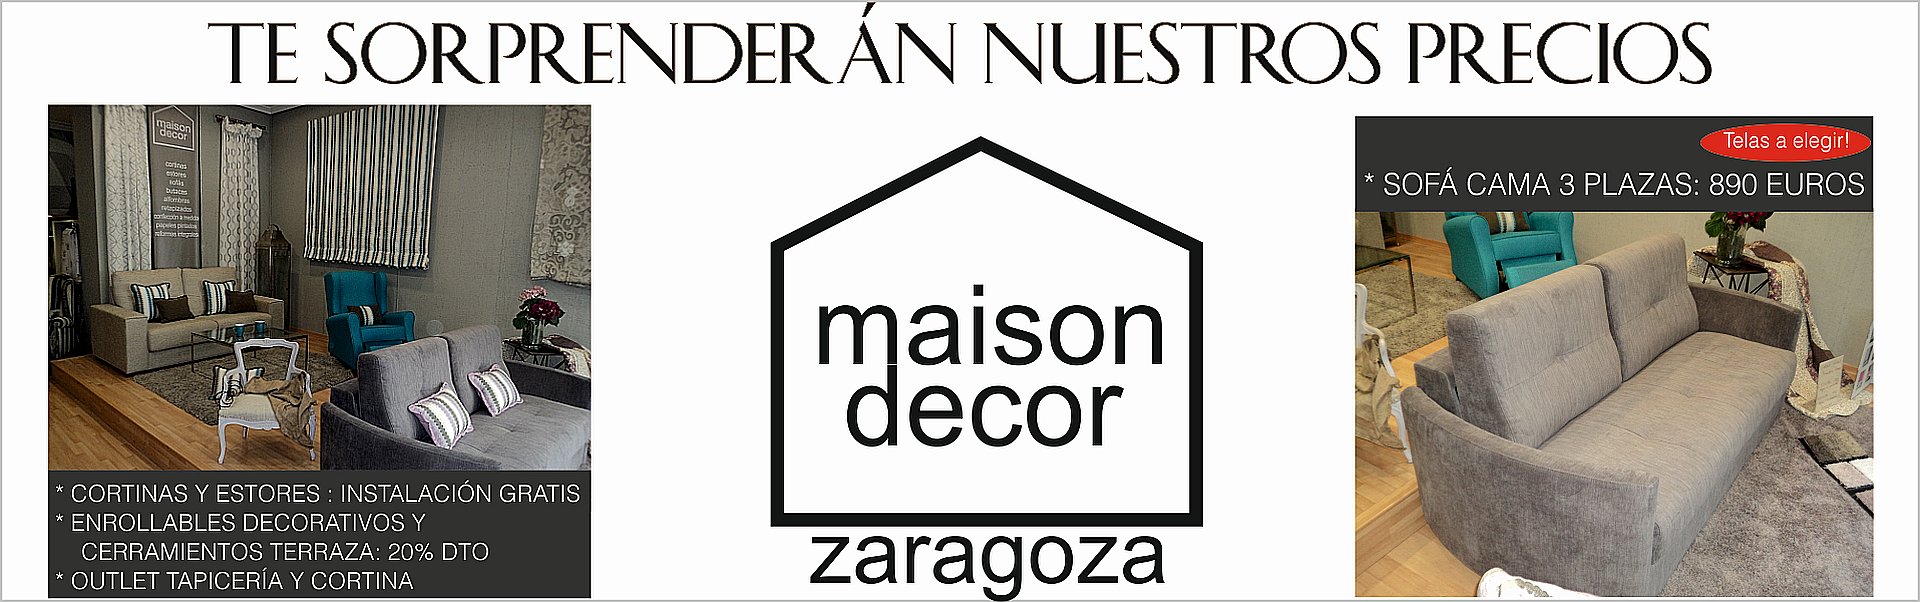 banner sofa enrollables estores cerramientos maison decor zaragoza ofertas mayo